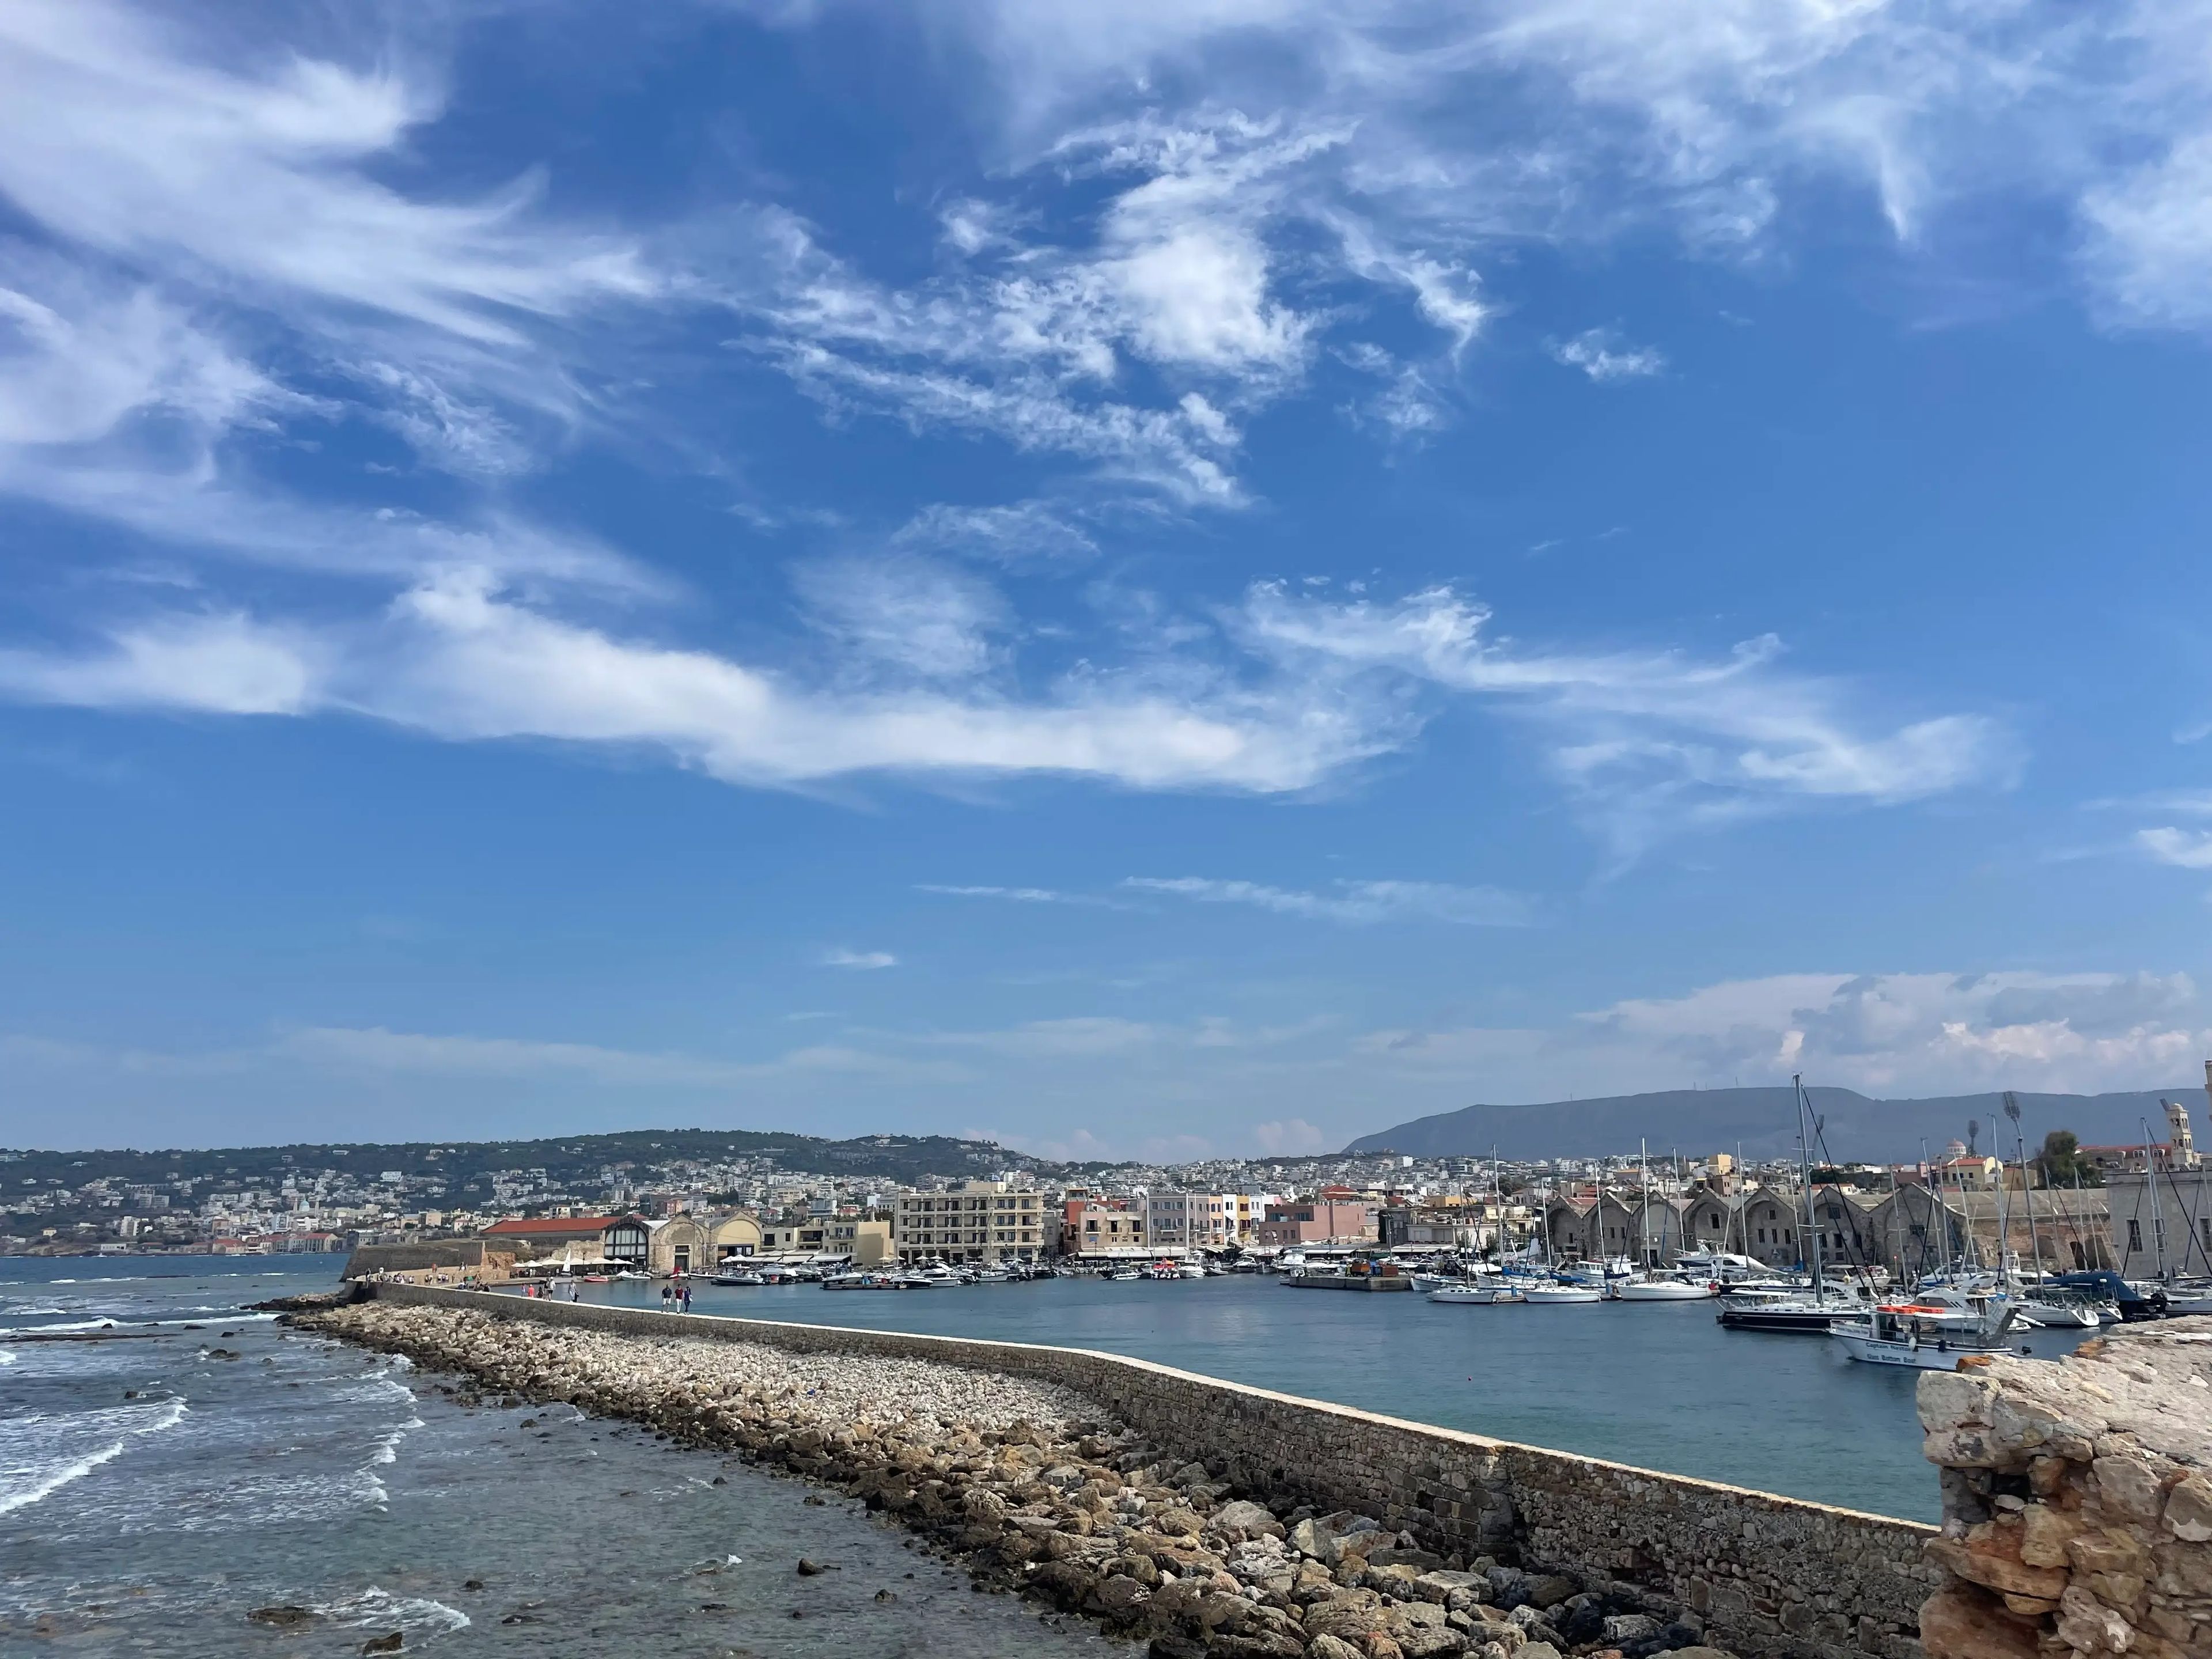 Las vistas desde el puerto de Chania eran increíbles.